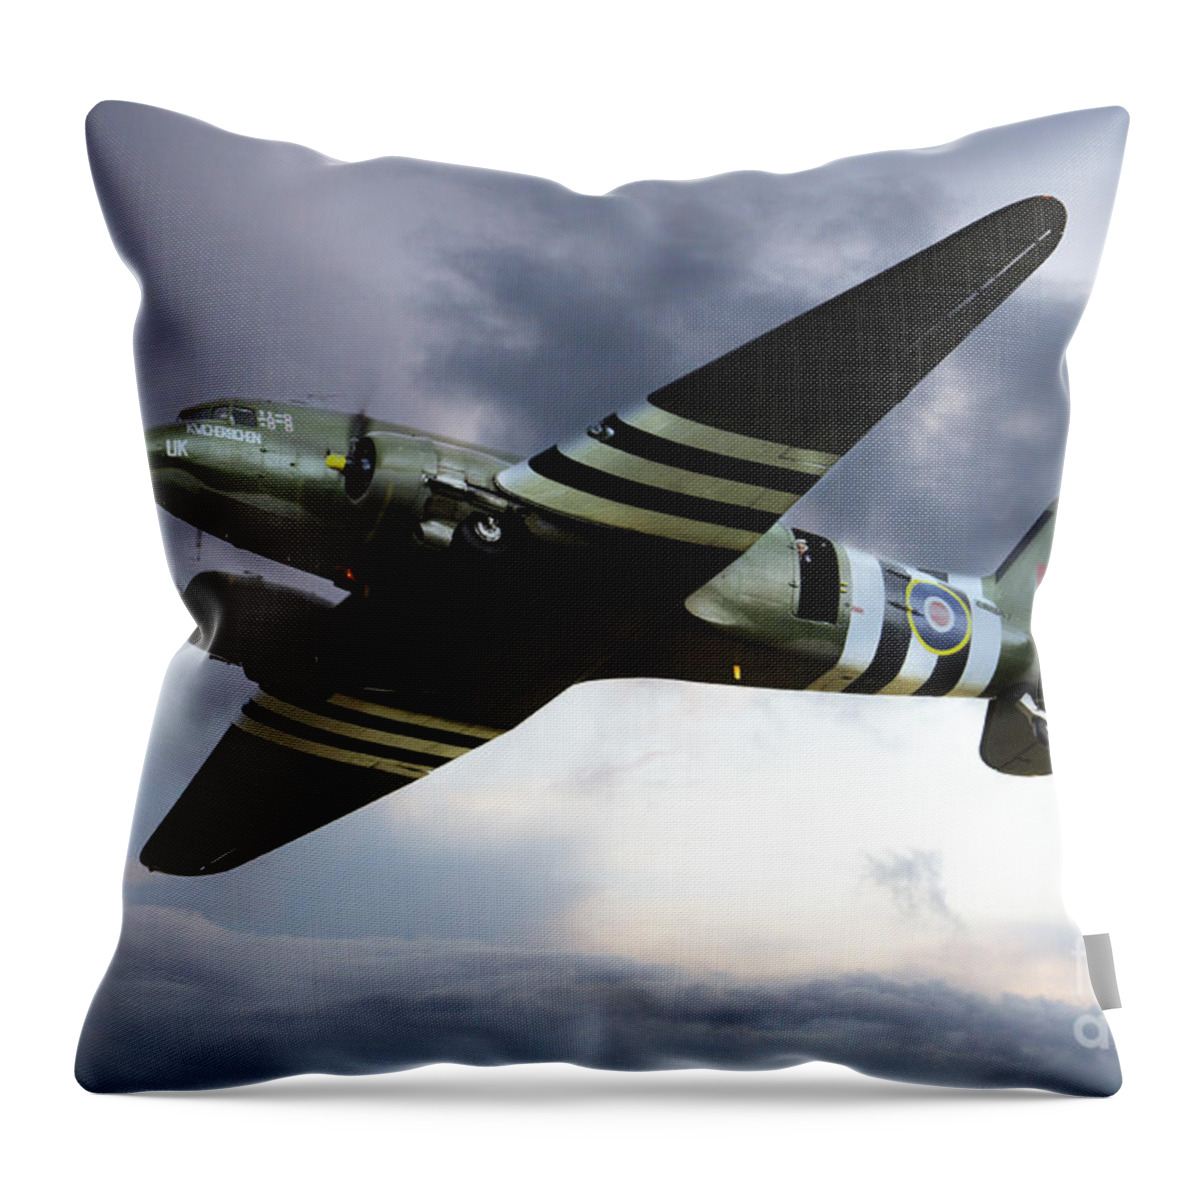 Bbmf Dakota Throw Pillow featuring the digital art Dakota by Airpower Art